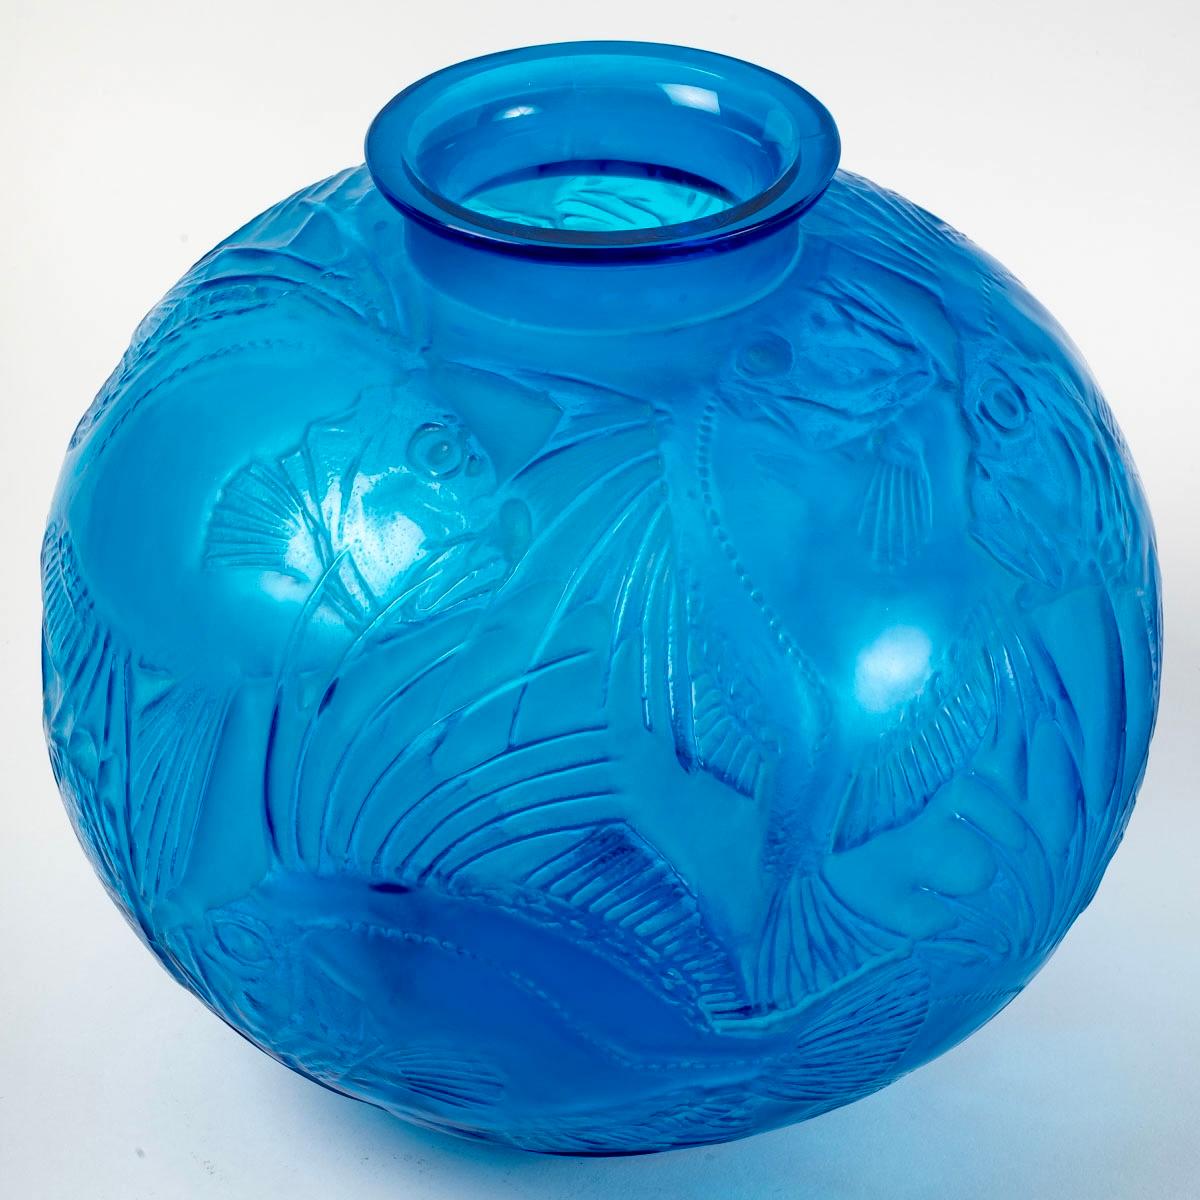 1921 Ren Lalique Poissons-Vase aus elektrisch blauem Glas mit weißer Patina, Fische (Art déco)